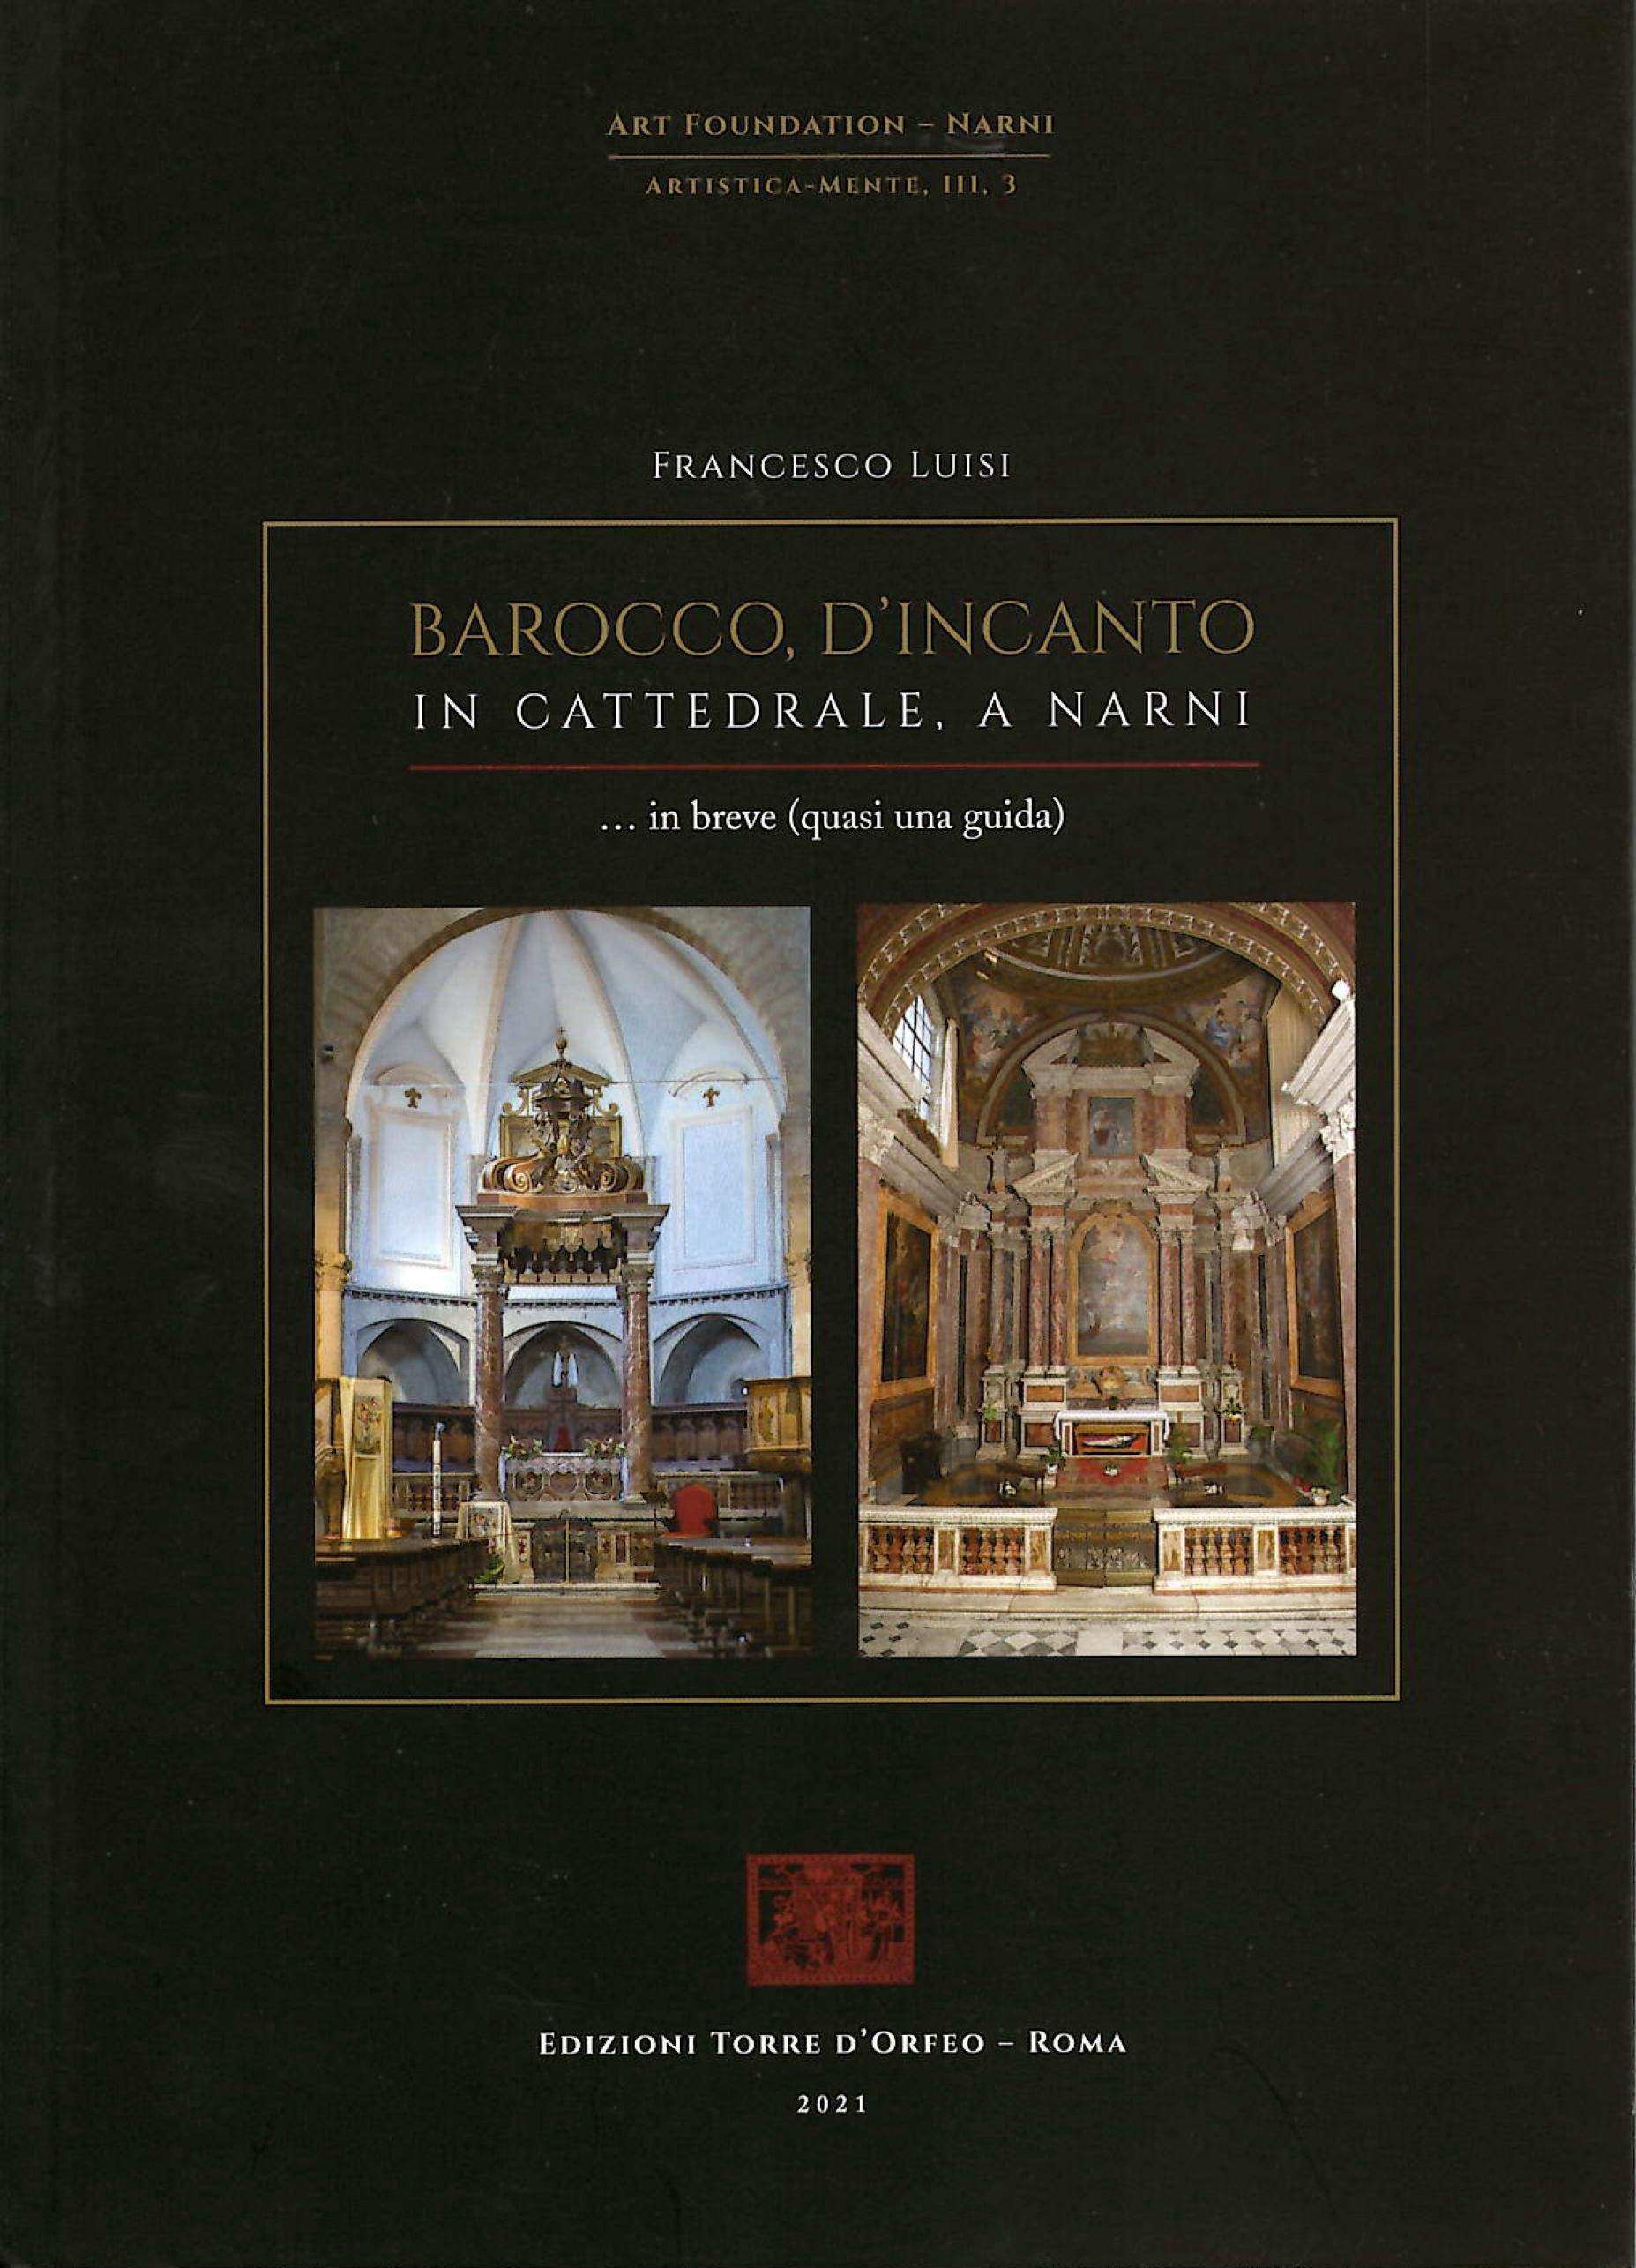 Francesco Luisi - Barocco, d'incanto in Cattedrale a Narni. In breve, quasi una guida